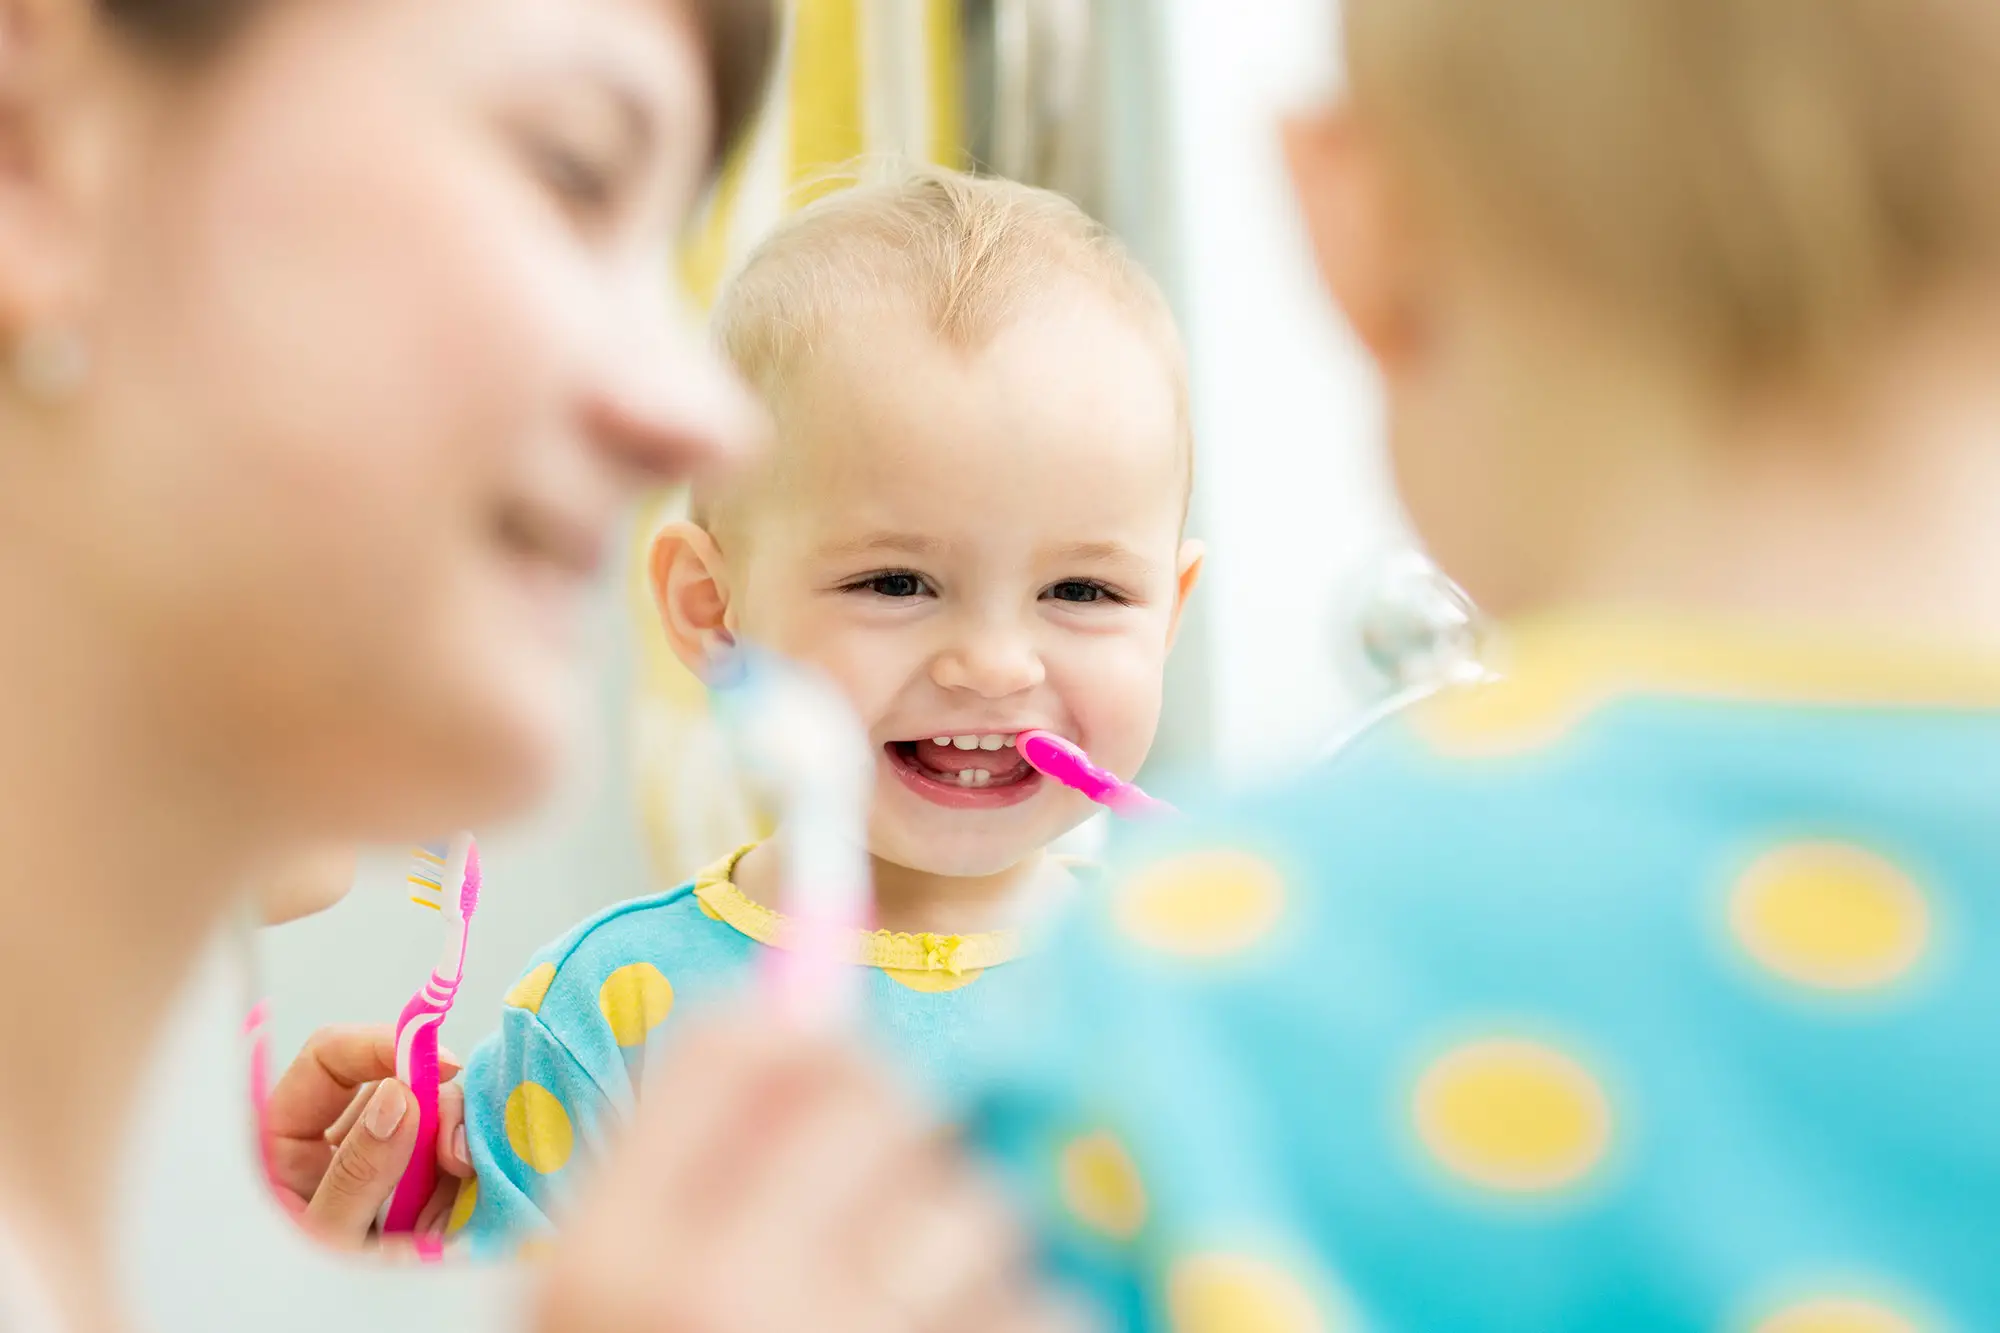 cuales son los sintomas de que a un bebe le estan saliendo los dientes